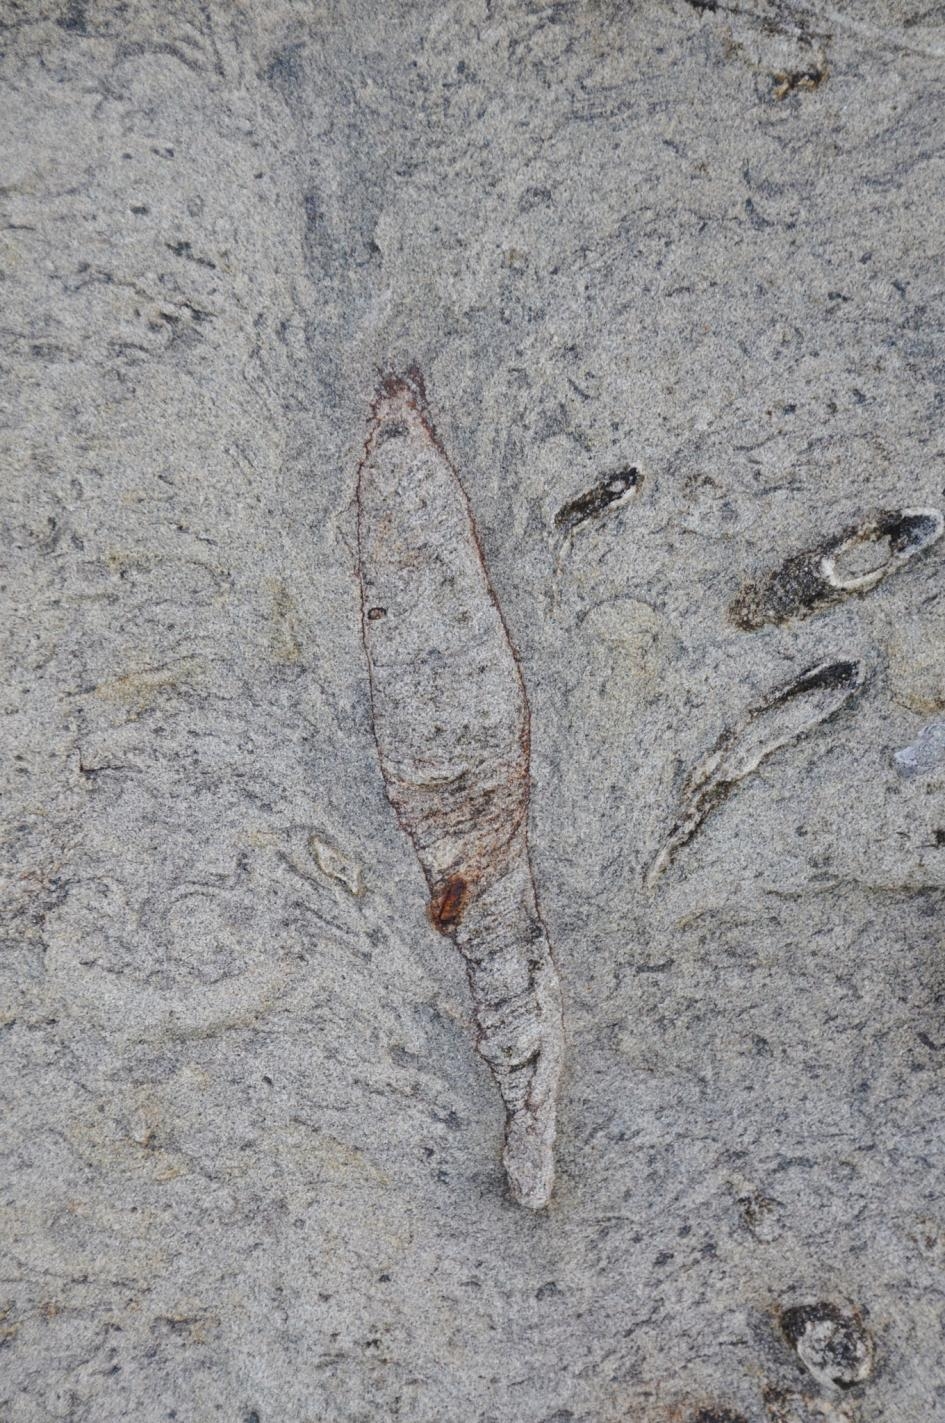 這個在臺灣找到的孔穴生痕化石，頂端形成了羽毛狀的崩塌結構，跟現代博比特蟲孔穴的結構很類似。COURTESY OF LUDVIG LÖWEMARK